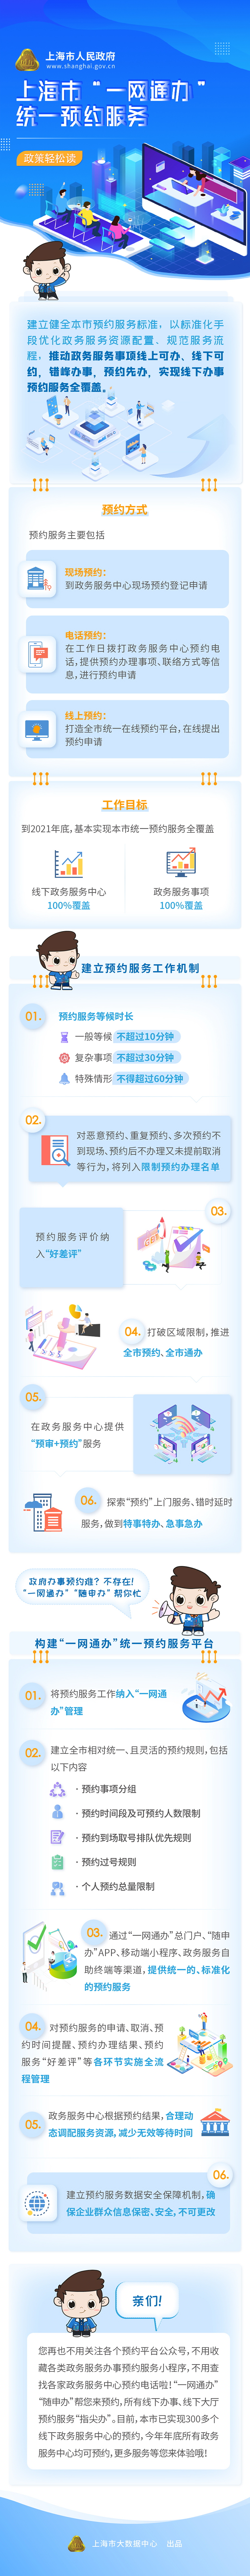 《上海市“一网通办”统一预约服务工作方案》政策轻松读.jpg